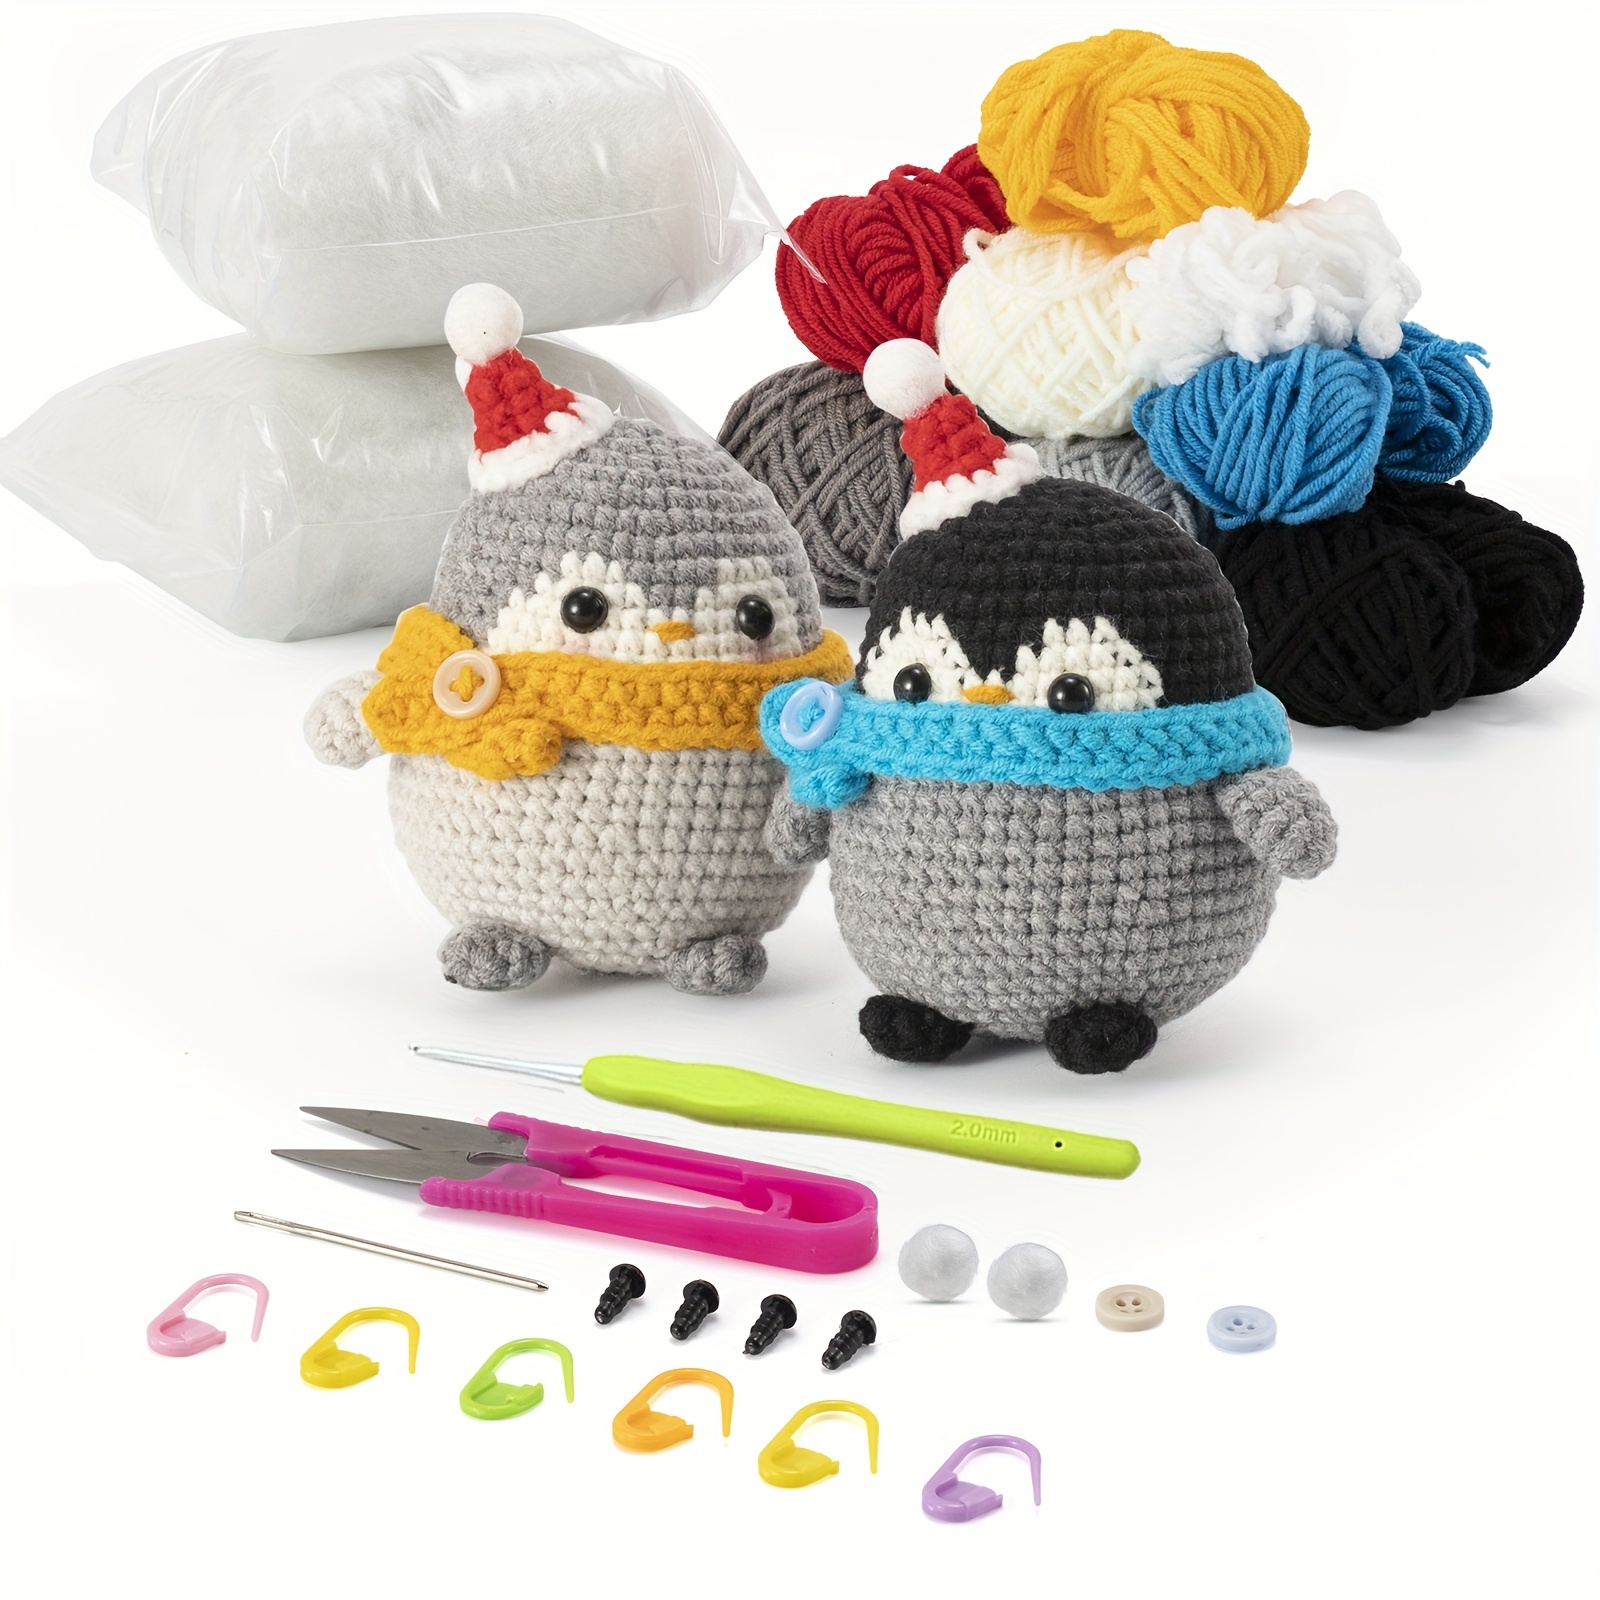 Jeslon Kit de crochet facile en forme de pingouin, kit de crochet pour  débutant comprenant un